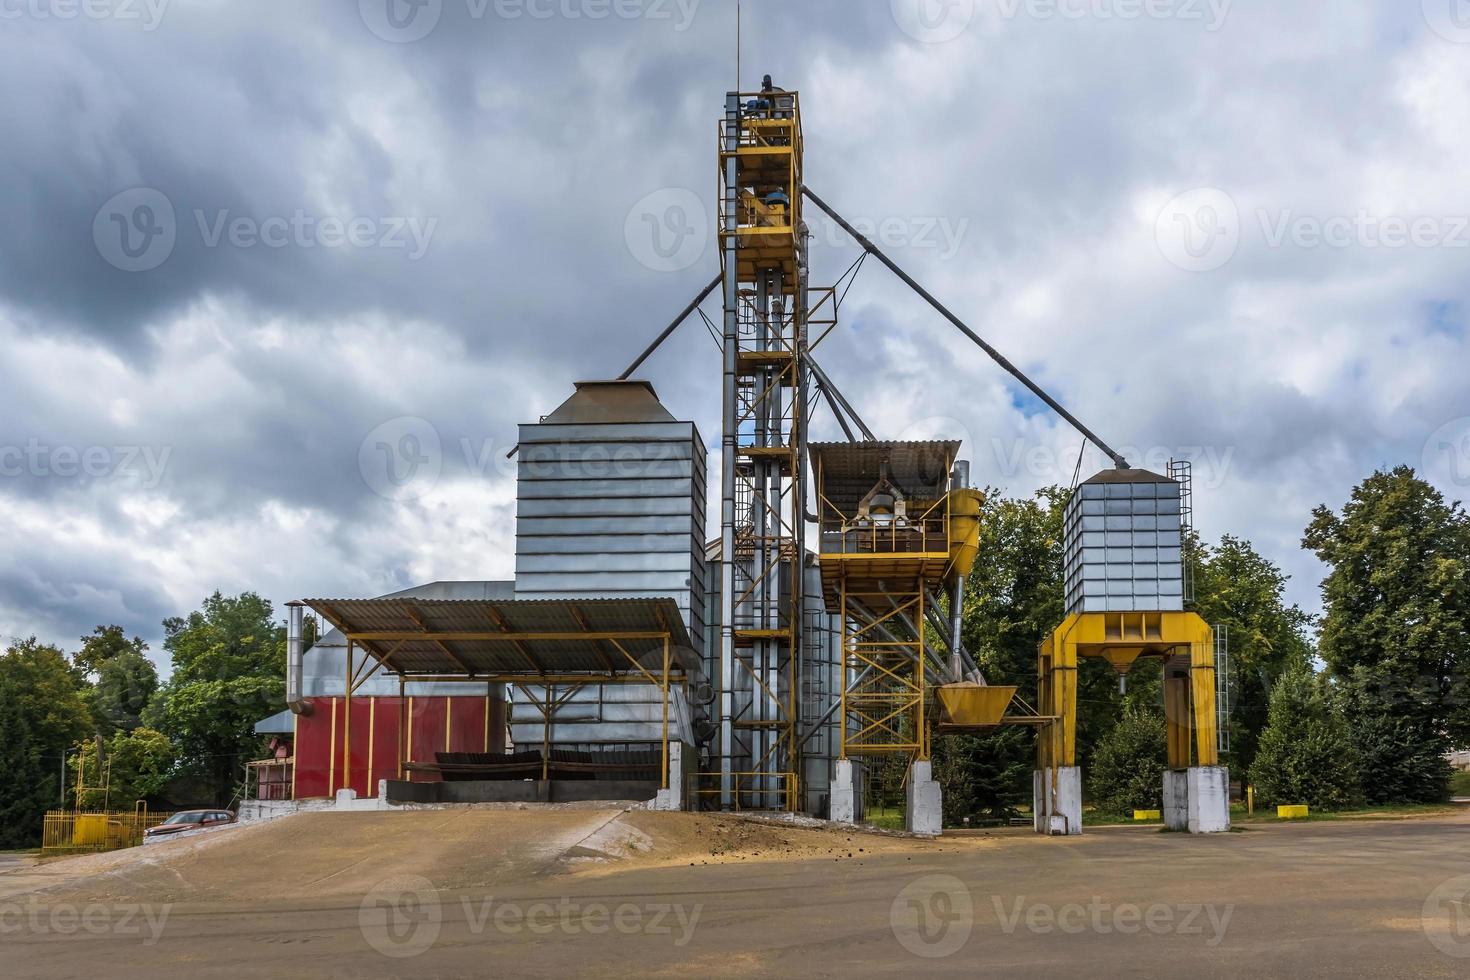 élévateur à greniers agro-silos avec ligne de nettoyage des graines sur l'usine de fabrication agro-industrielle pour le traitement, le séchage, le nettoyage et le stockage des produits agricoles photo